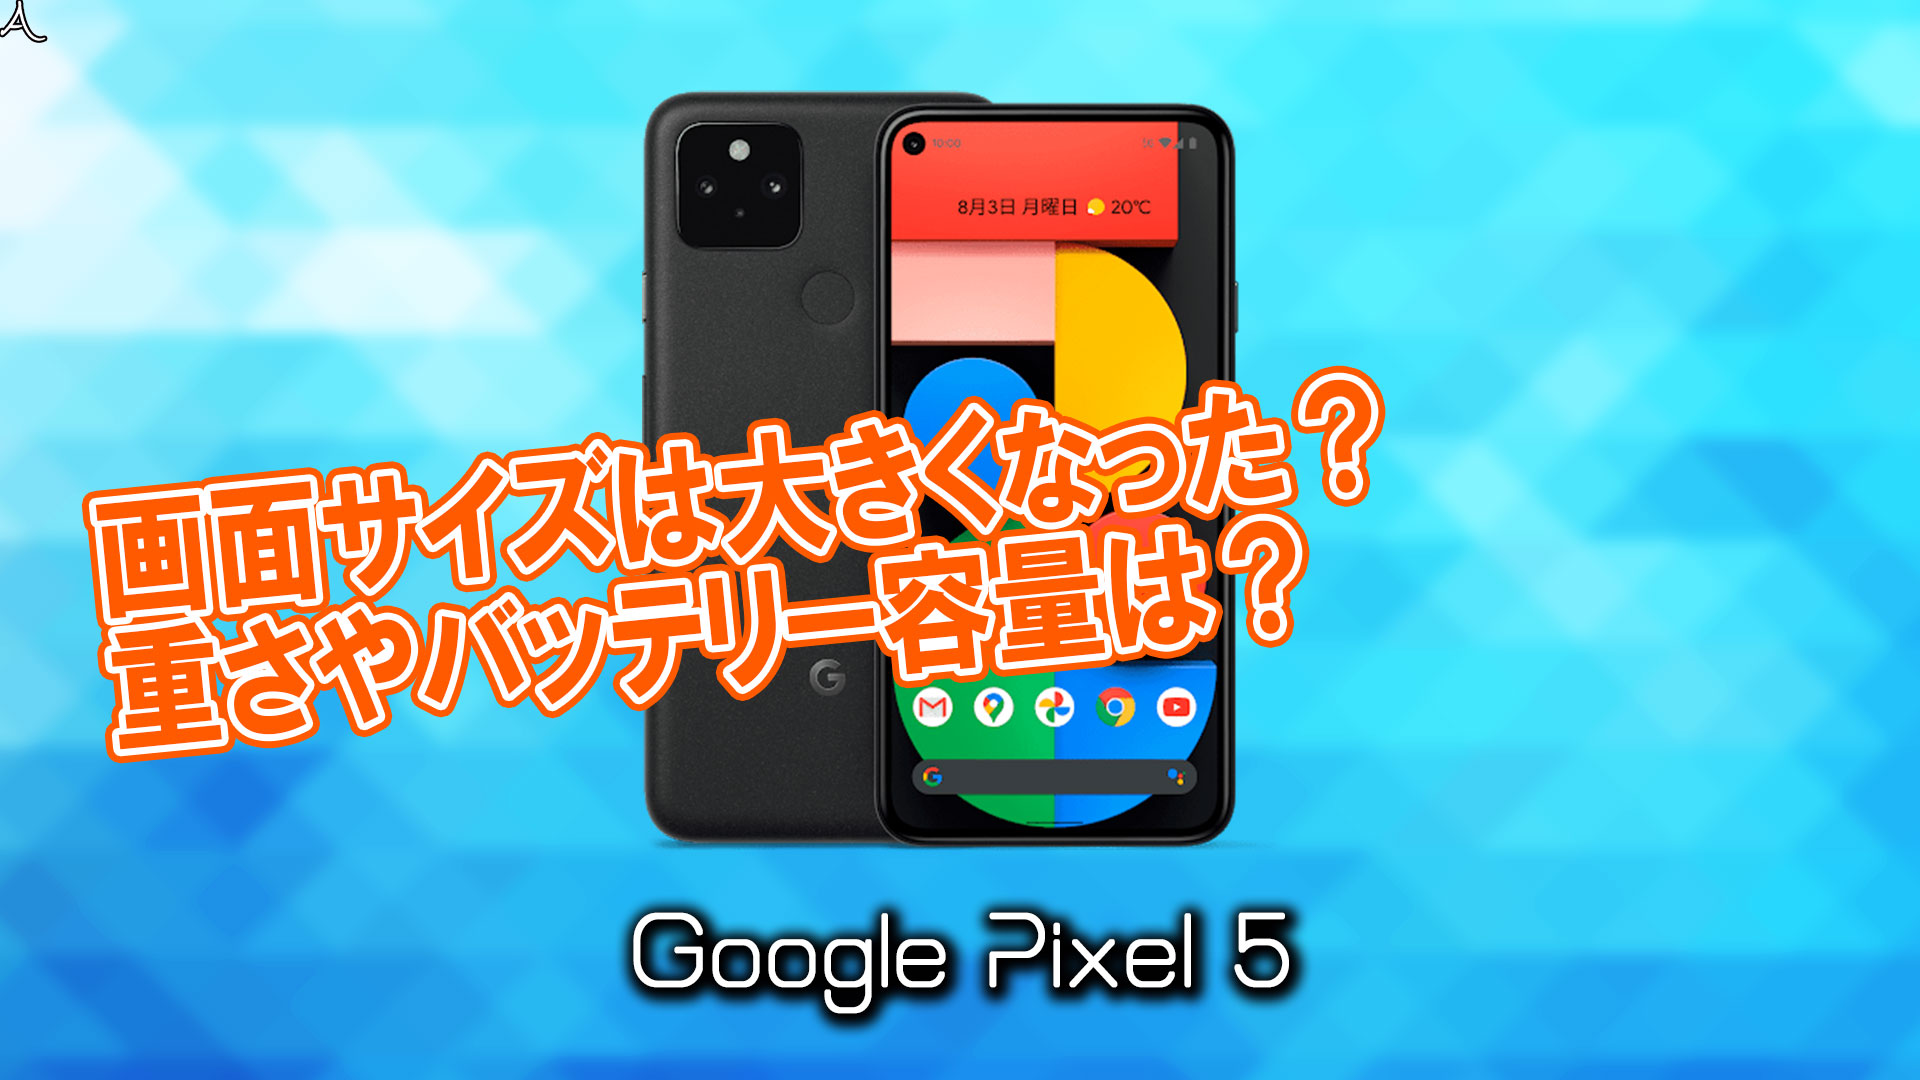 「Google Pixel 5」のサイズや重さを他のスマホと細かく比較